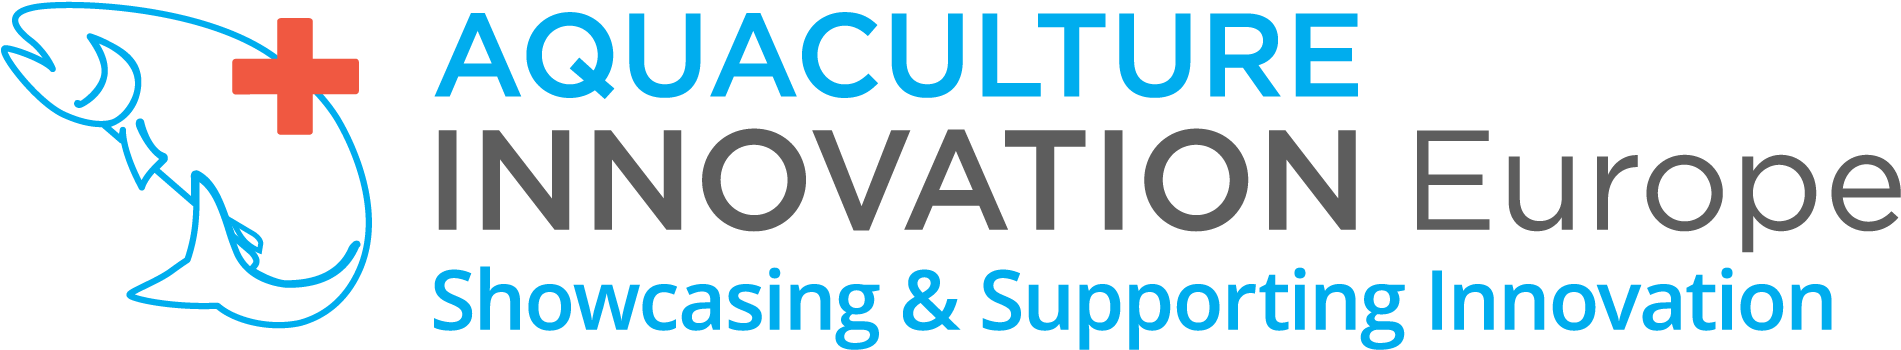 Aquaculture Innovation Summit - Aquaculture (2087x456)